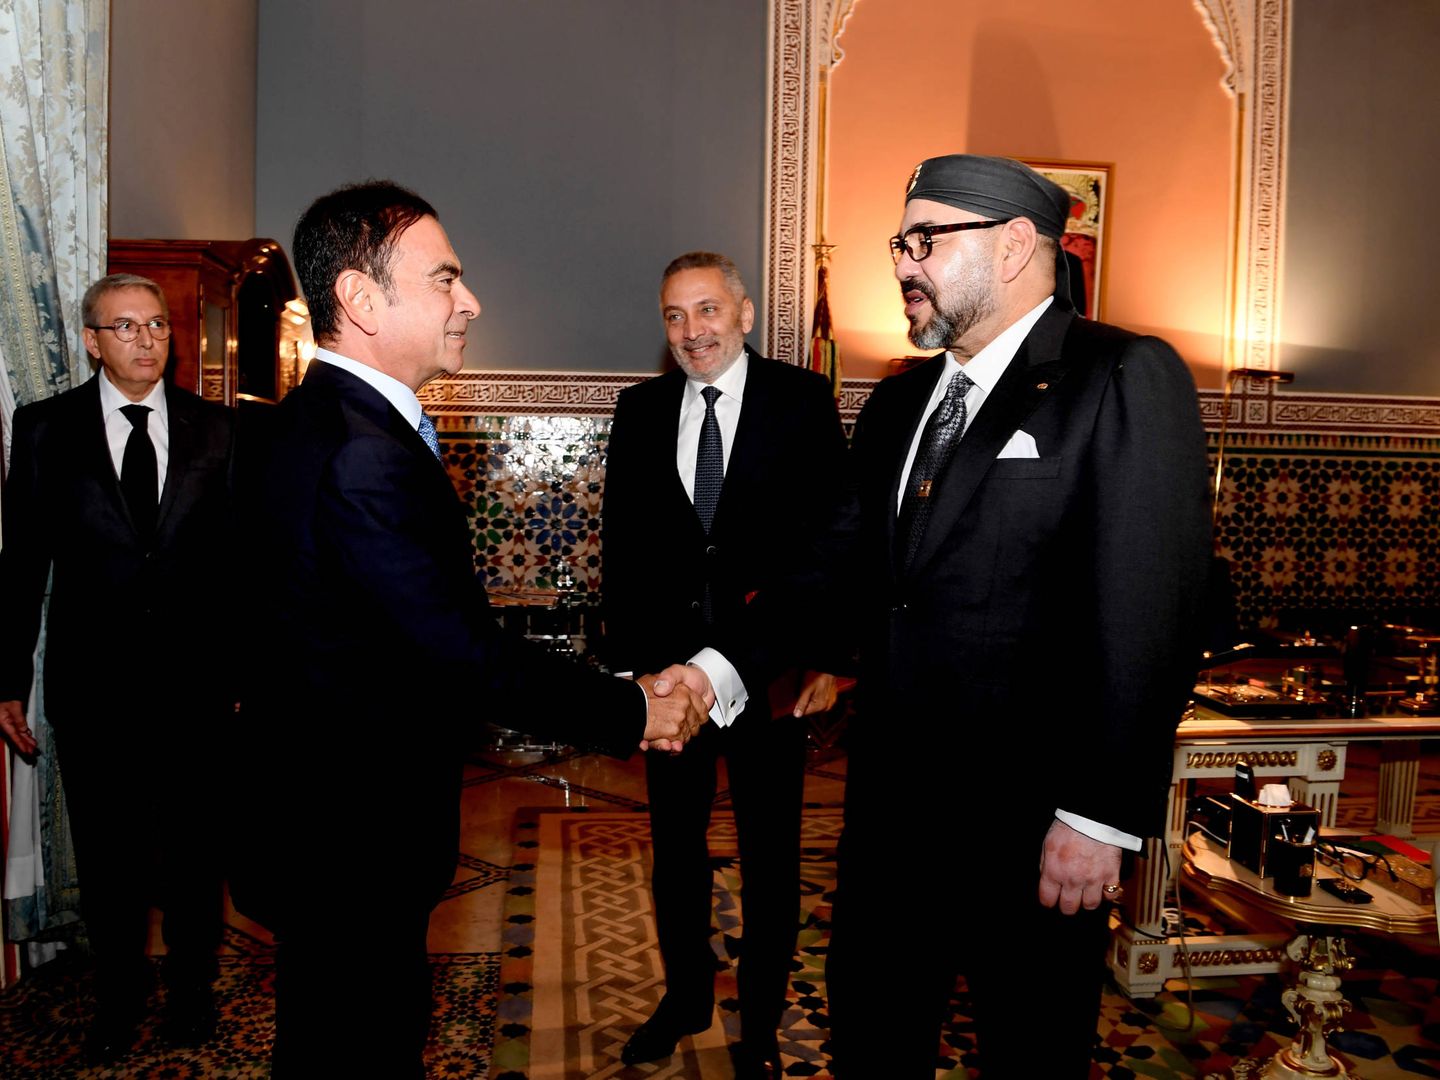  El rey Mohamed VI recibe a Carlos Ghosn, presidente de Renault, el 25 de octubre. (MAP/Libre difusión)